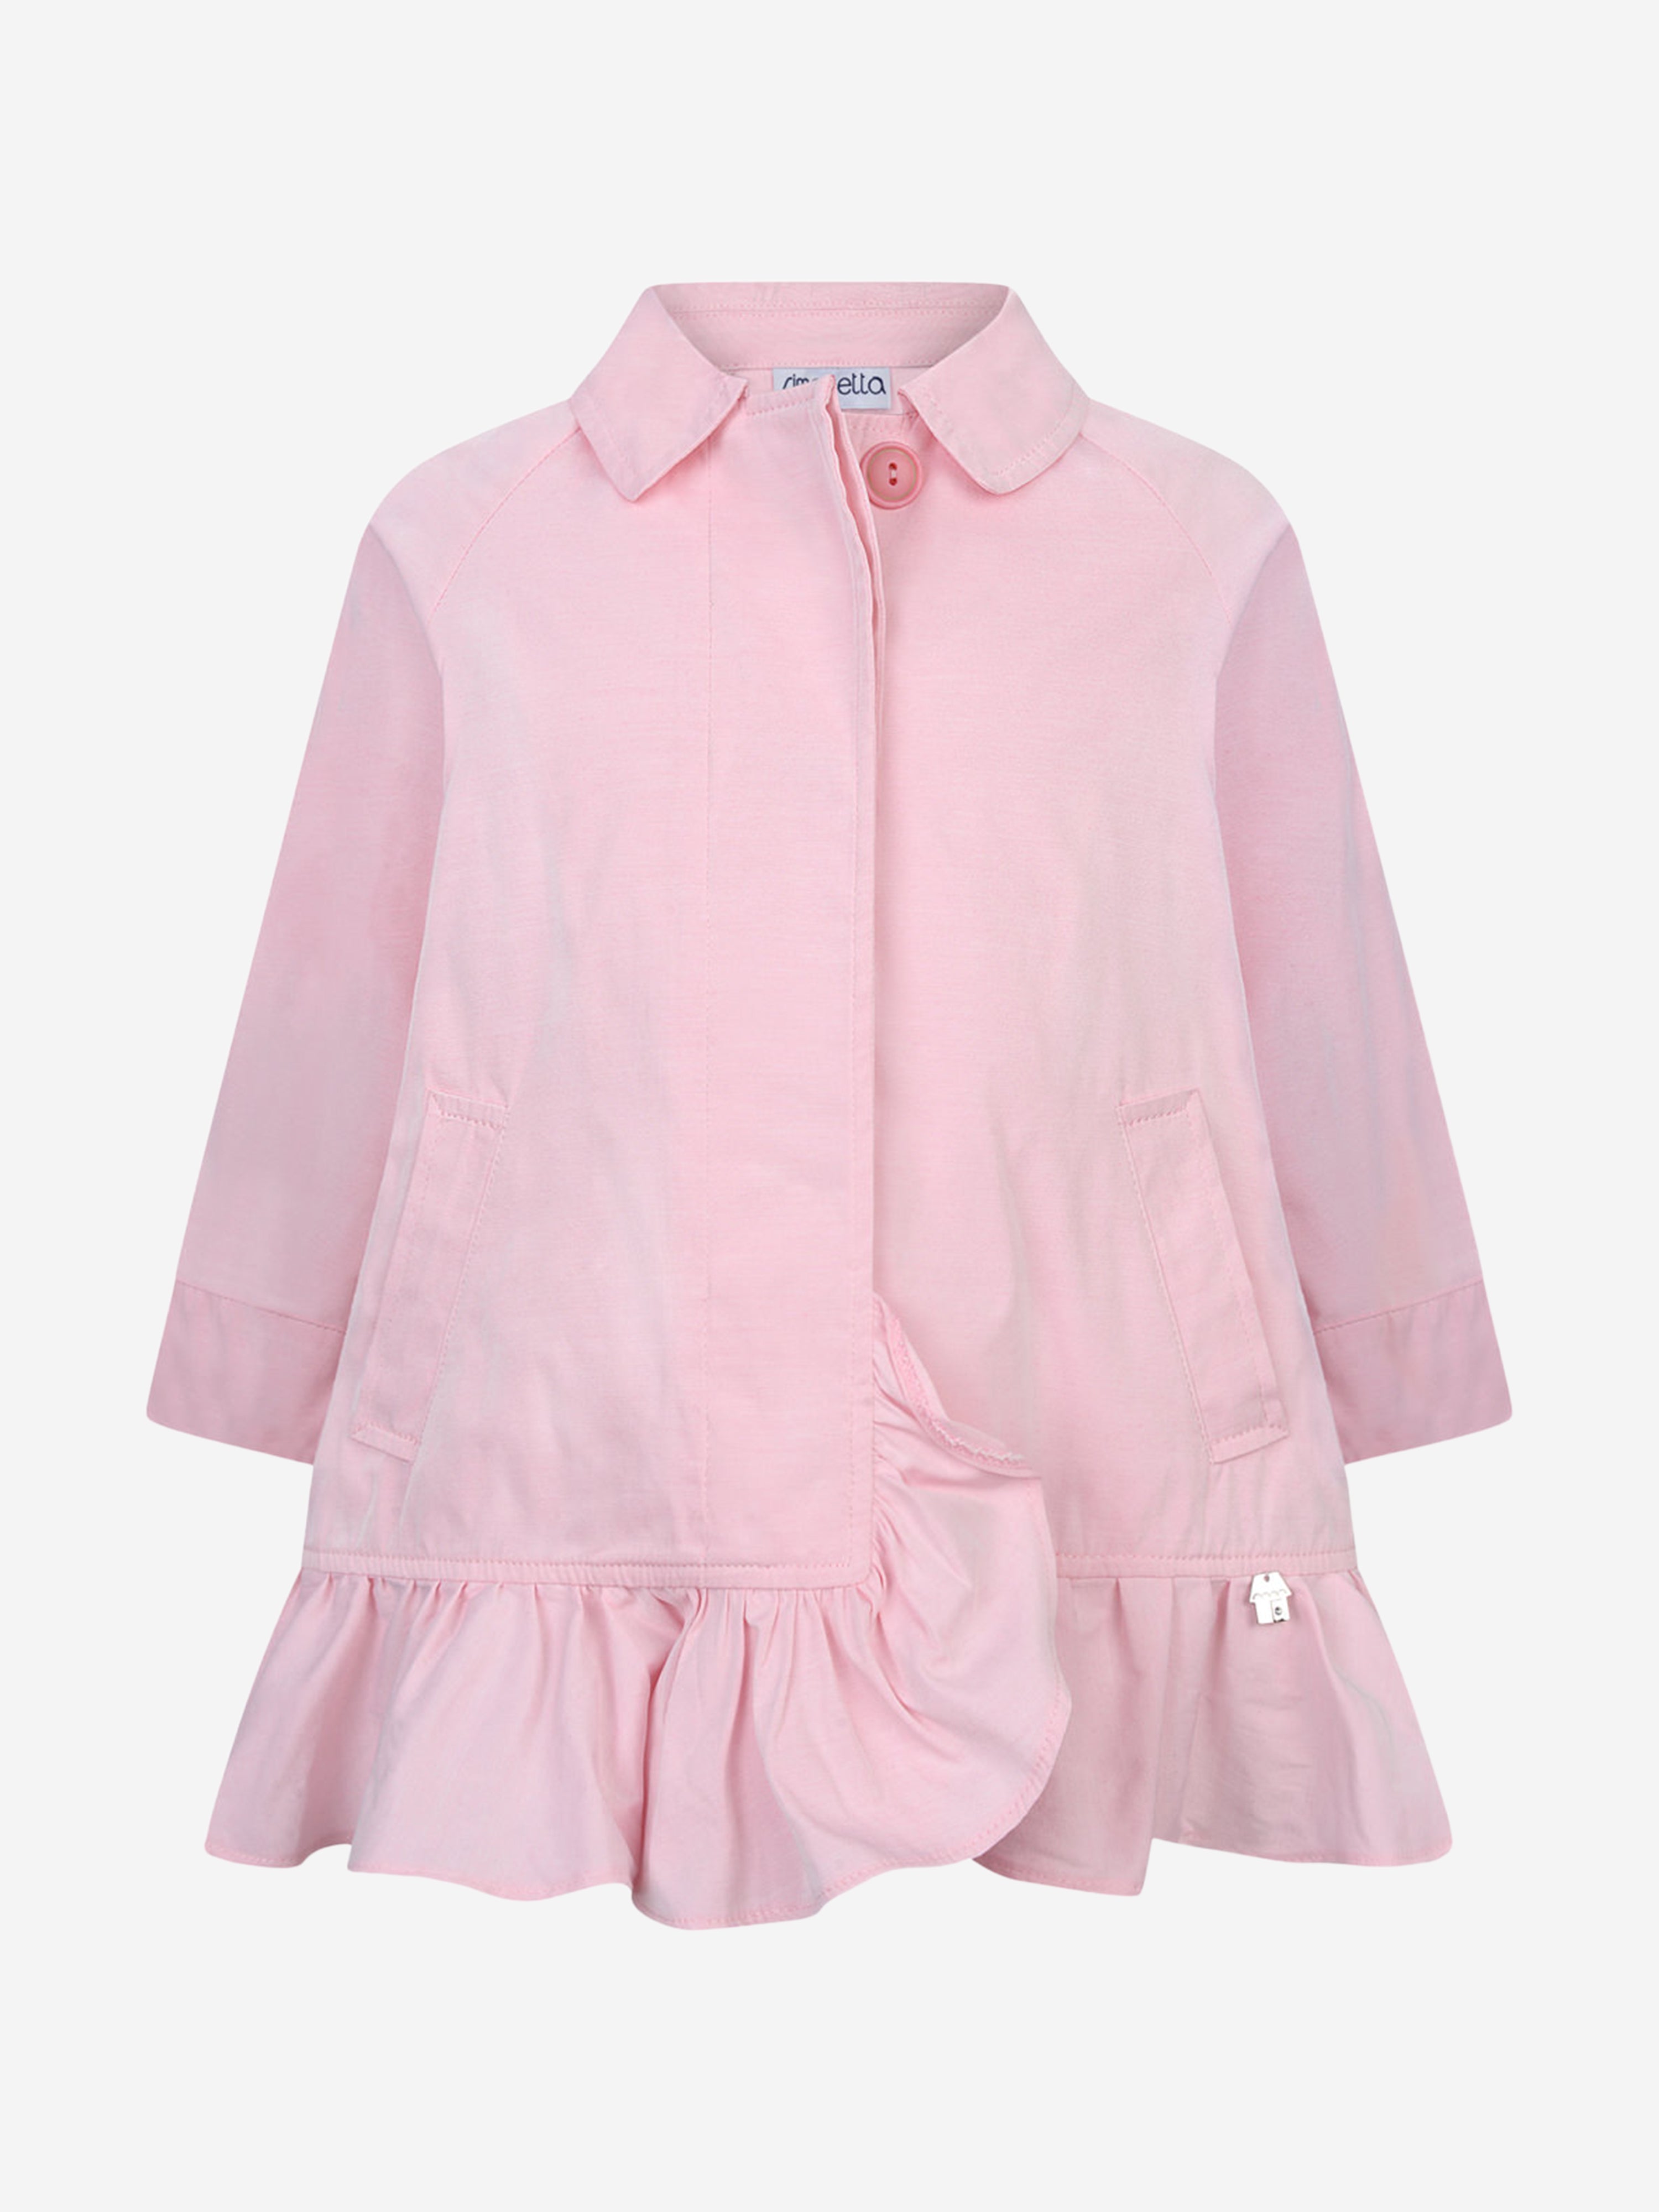 Simonetta Kids' Girls Trench Coat 4 Yrs Pink